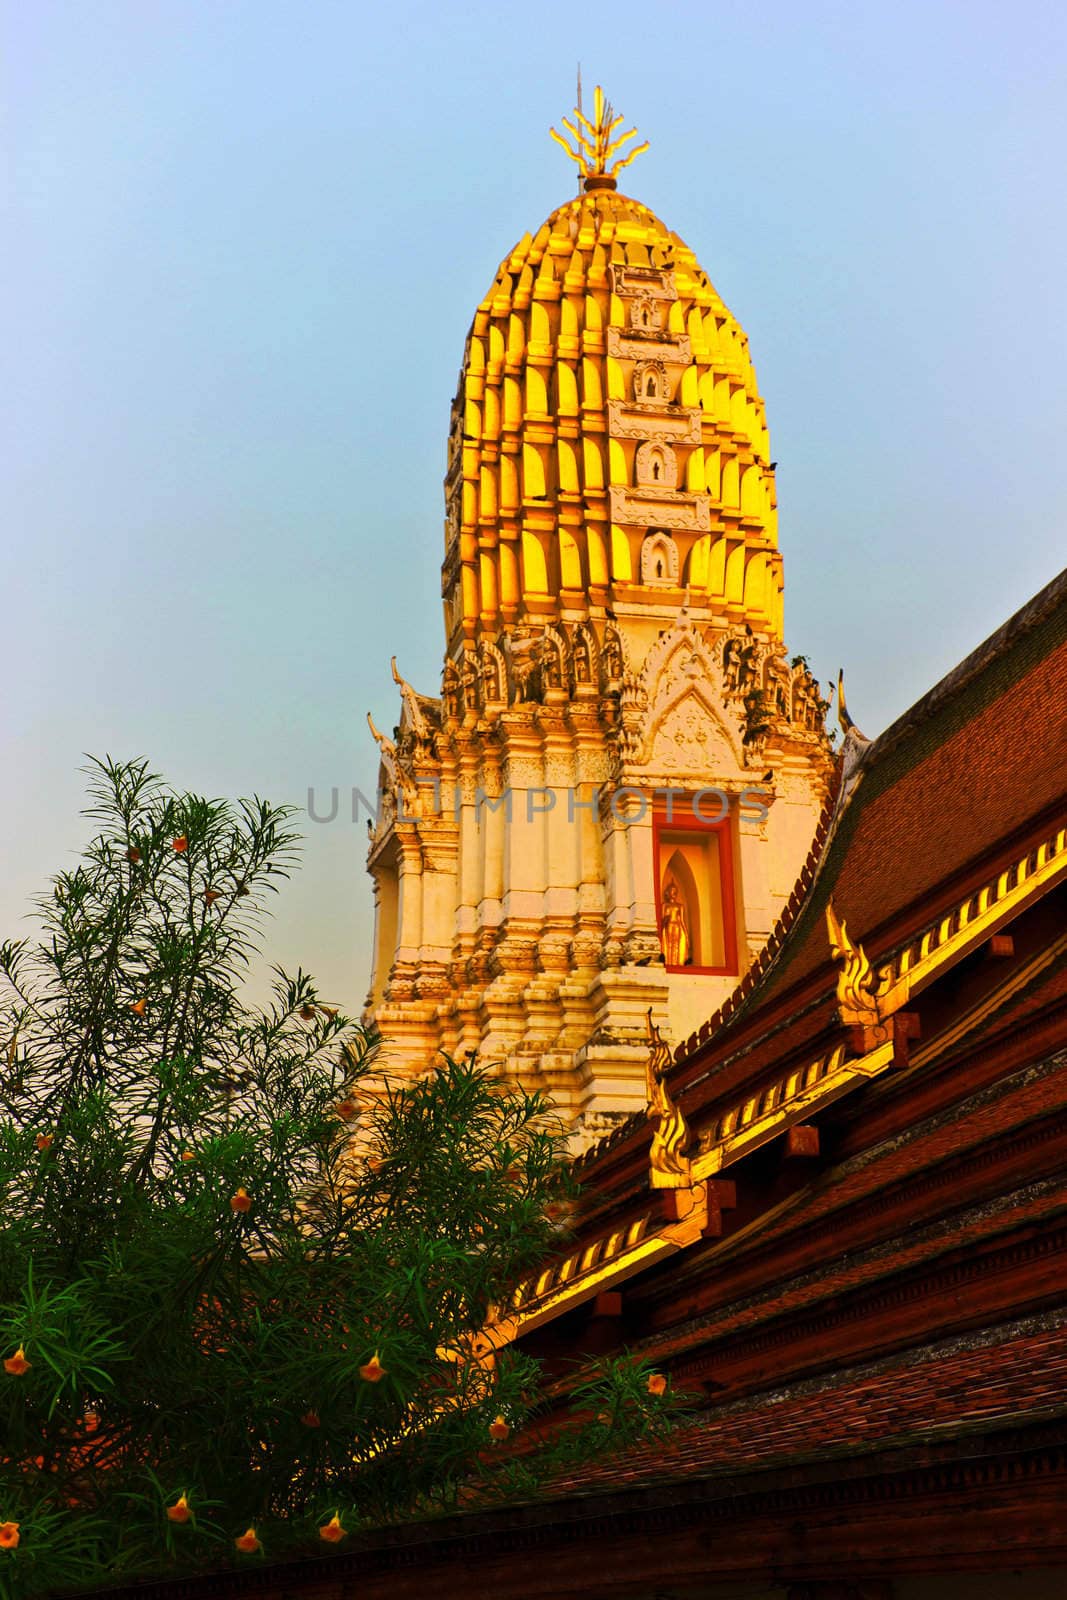 Thai temple,Thailand by sutipp11